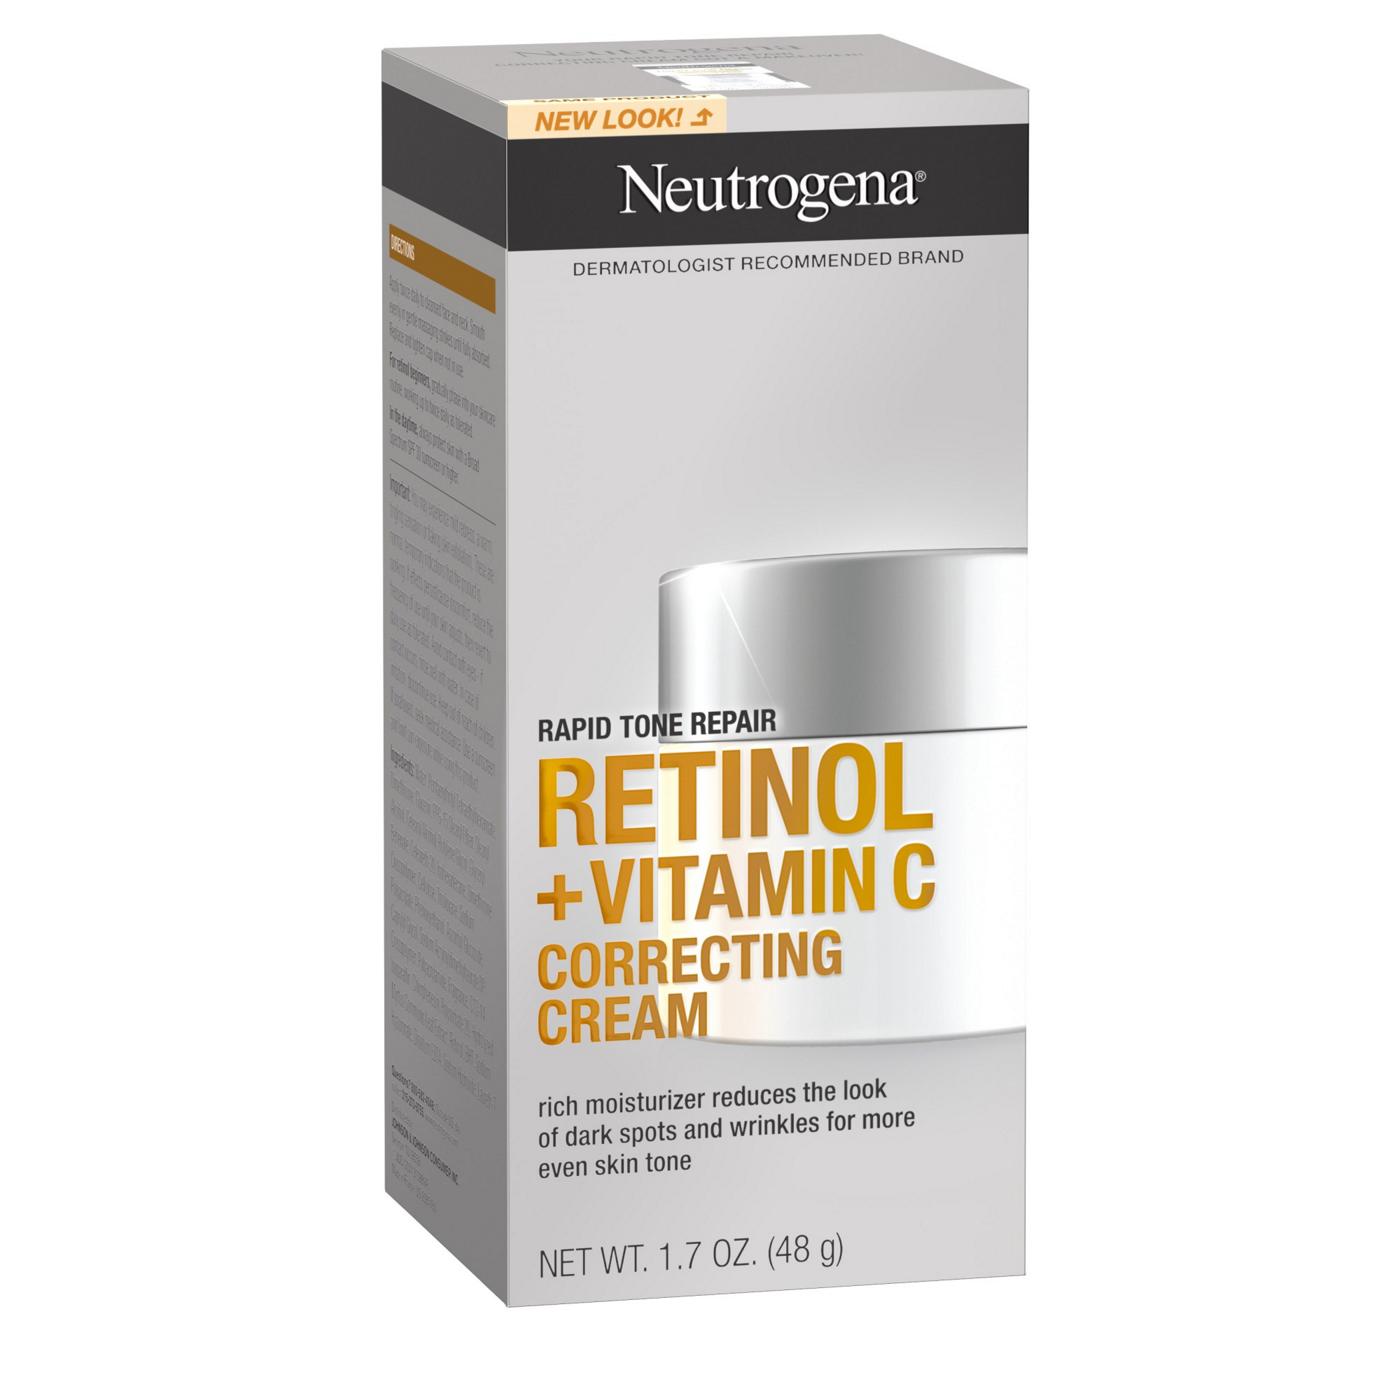 Neutrogena Rapid Tone Repair Retinol + Vitamin C Correcting Cream; image 2 of 8